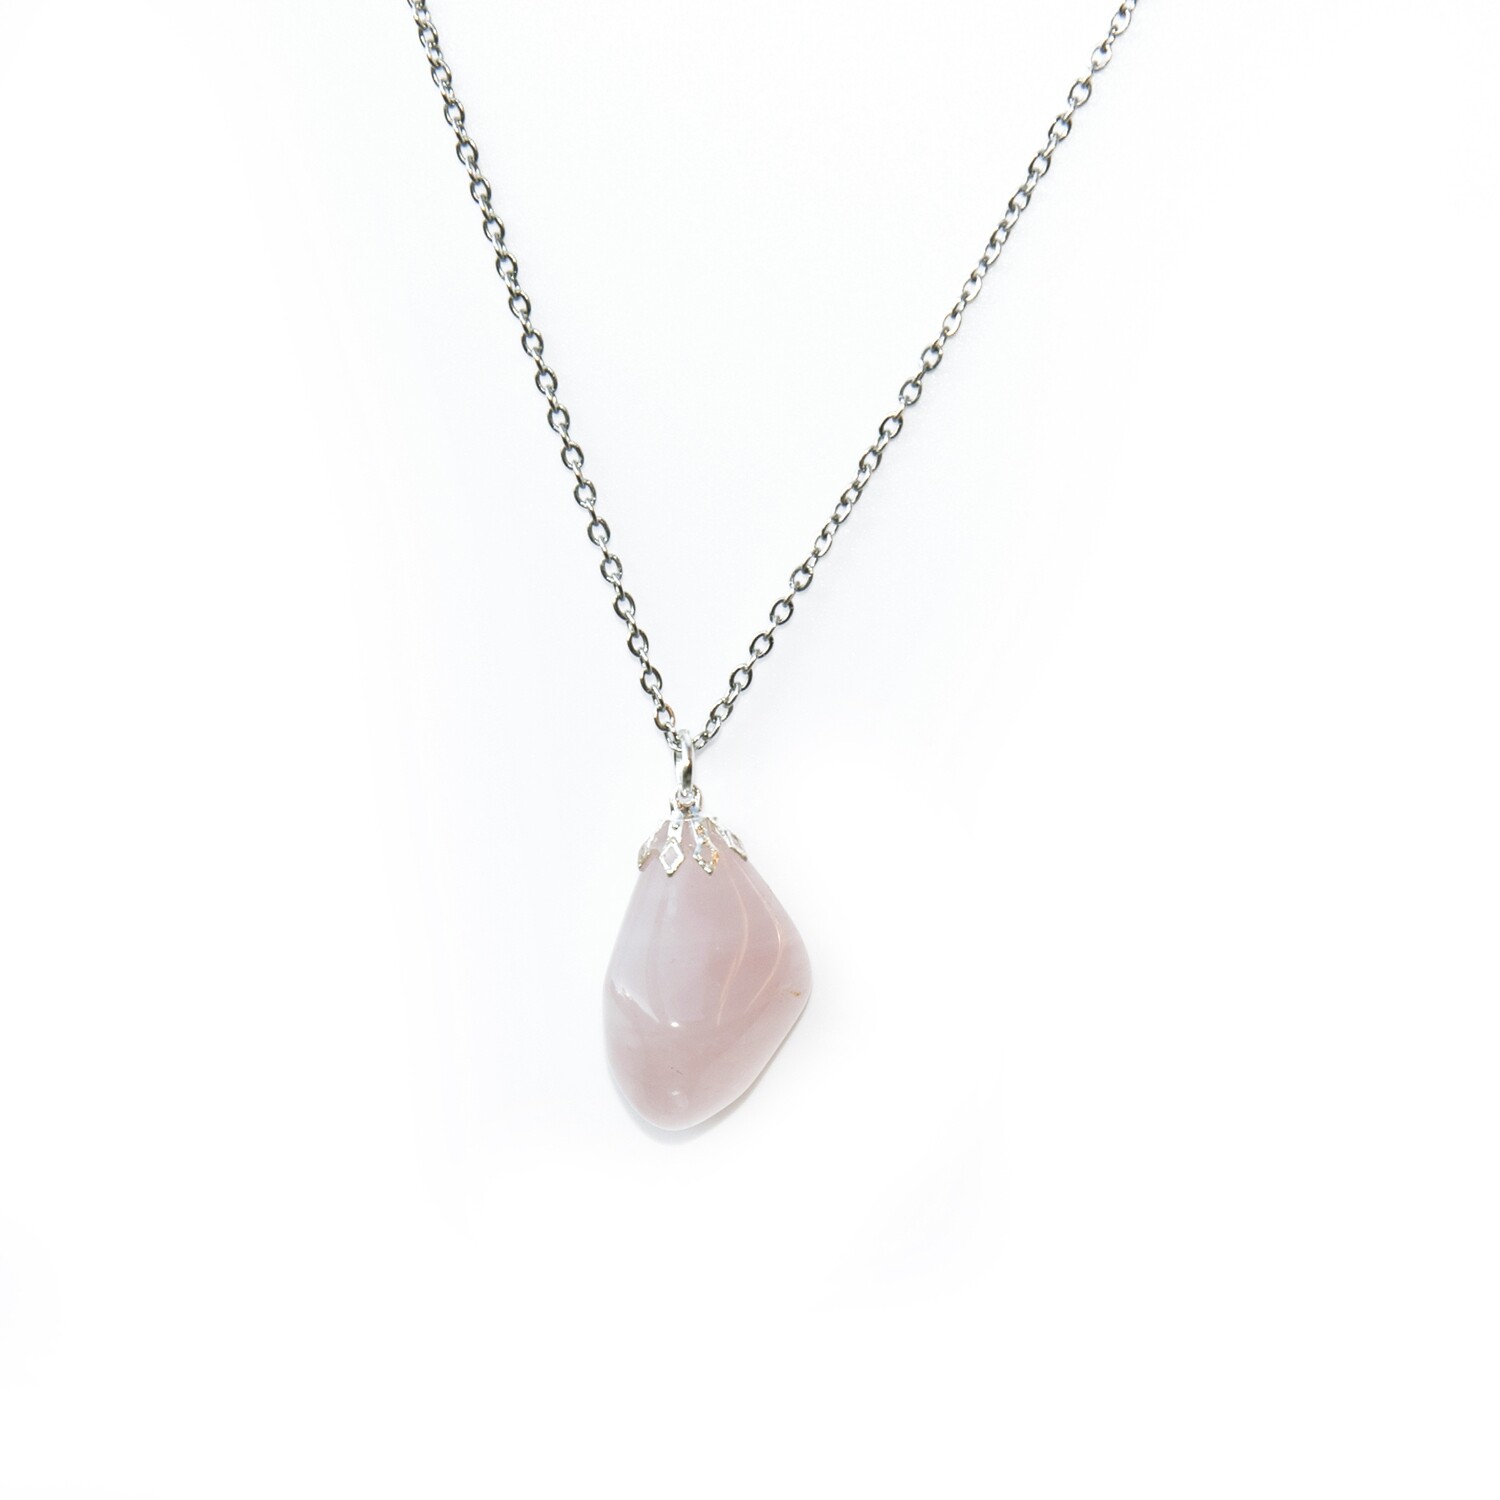 Rose Quartz pendant gemstone necklace